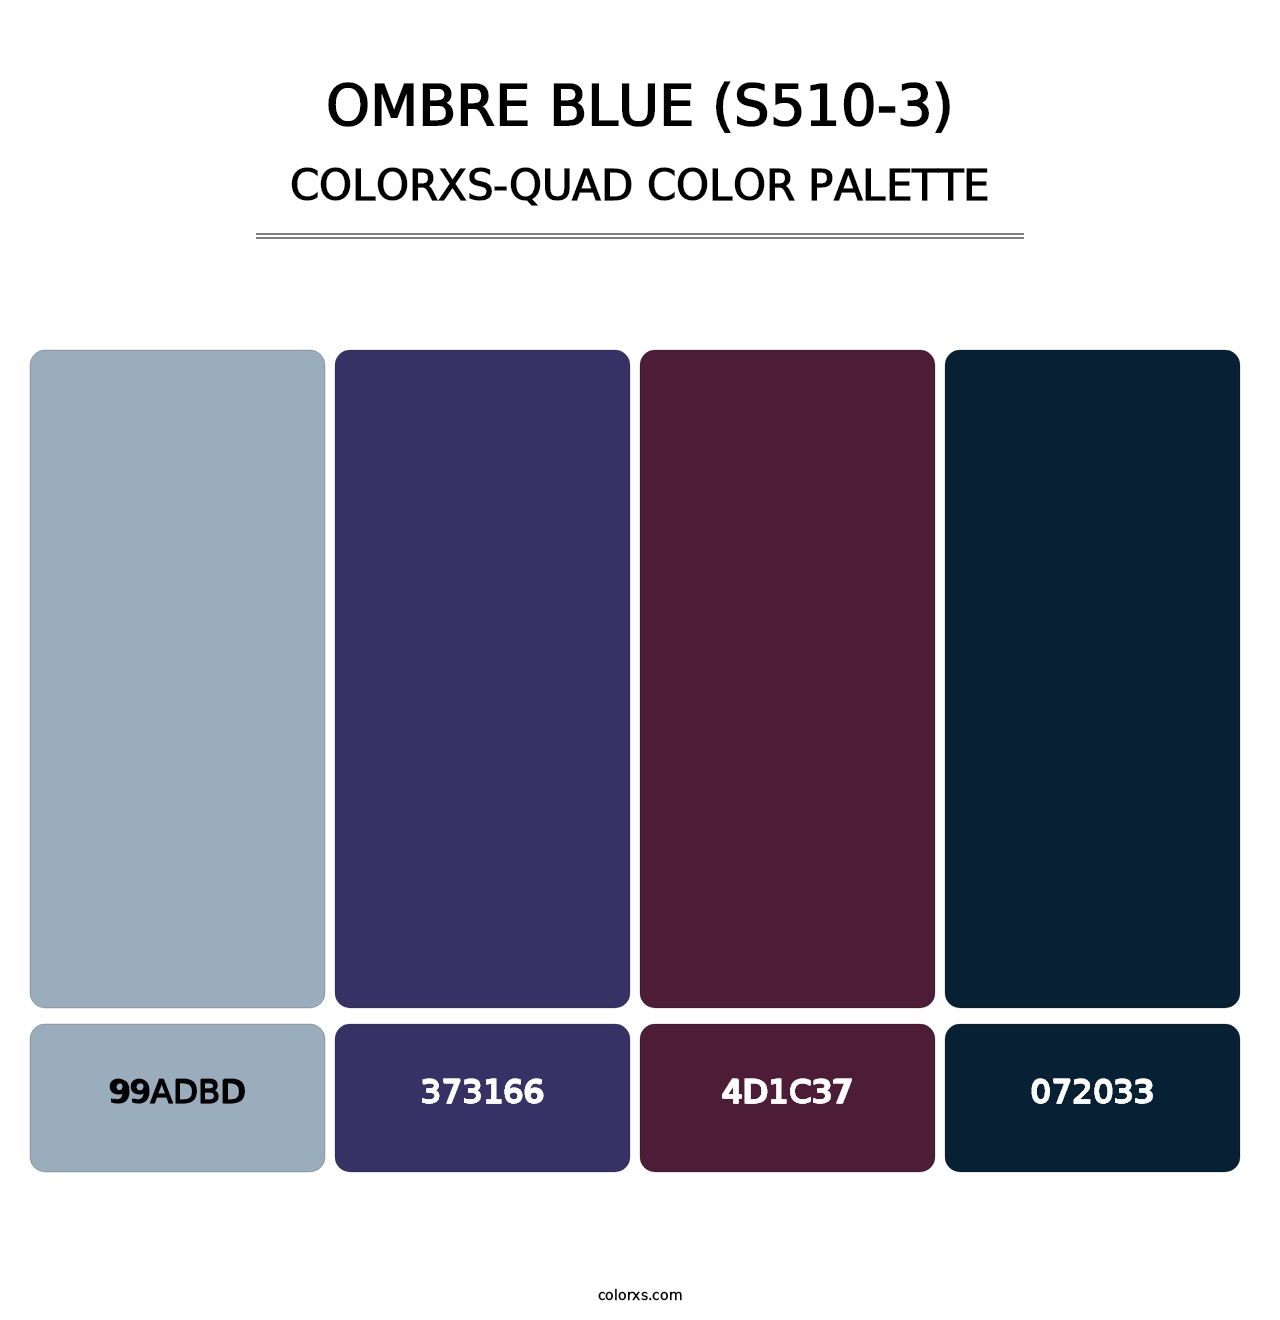 Ombre Blue (S510-3) - Colorxs Quad Palette